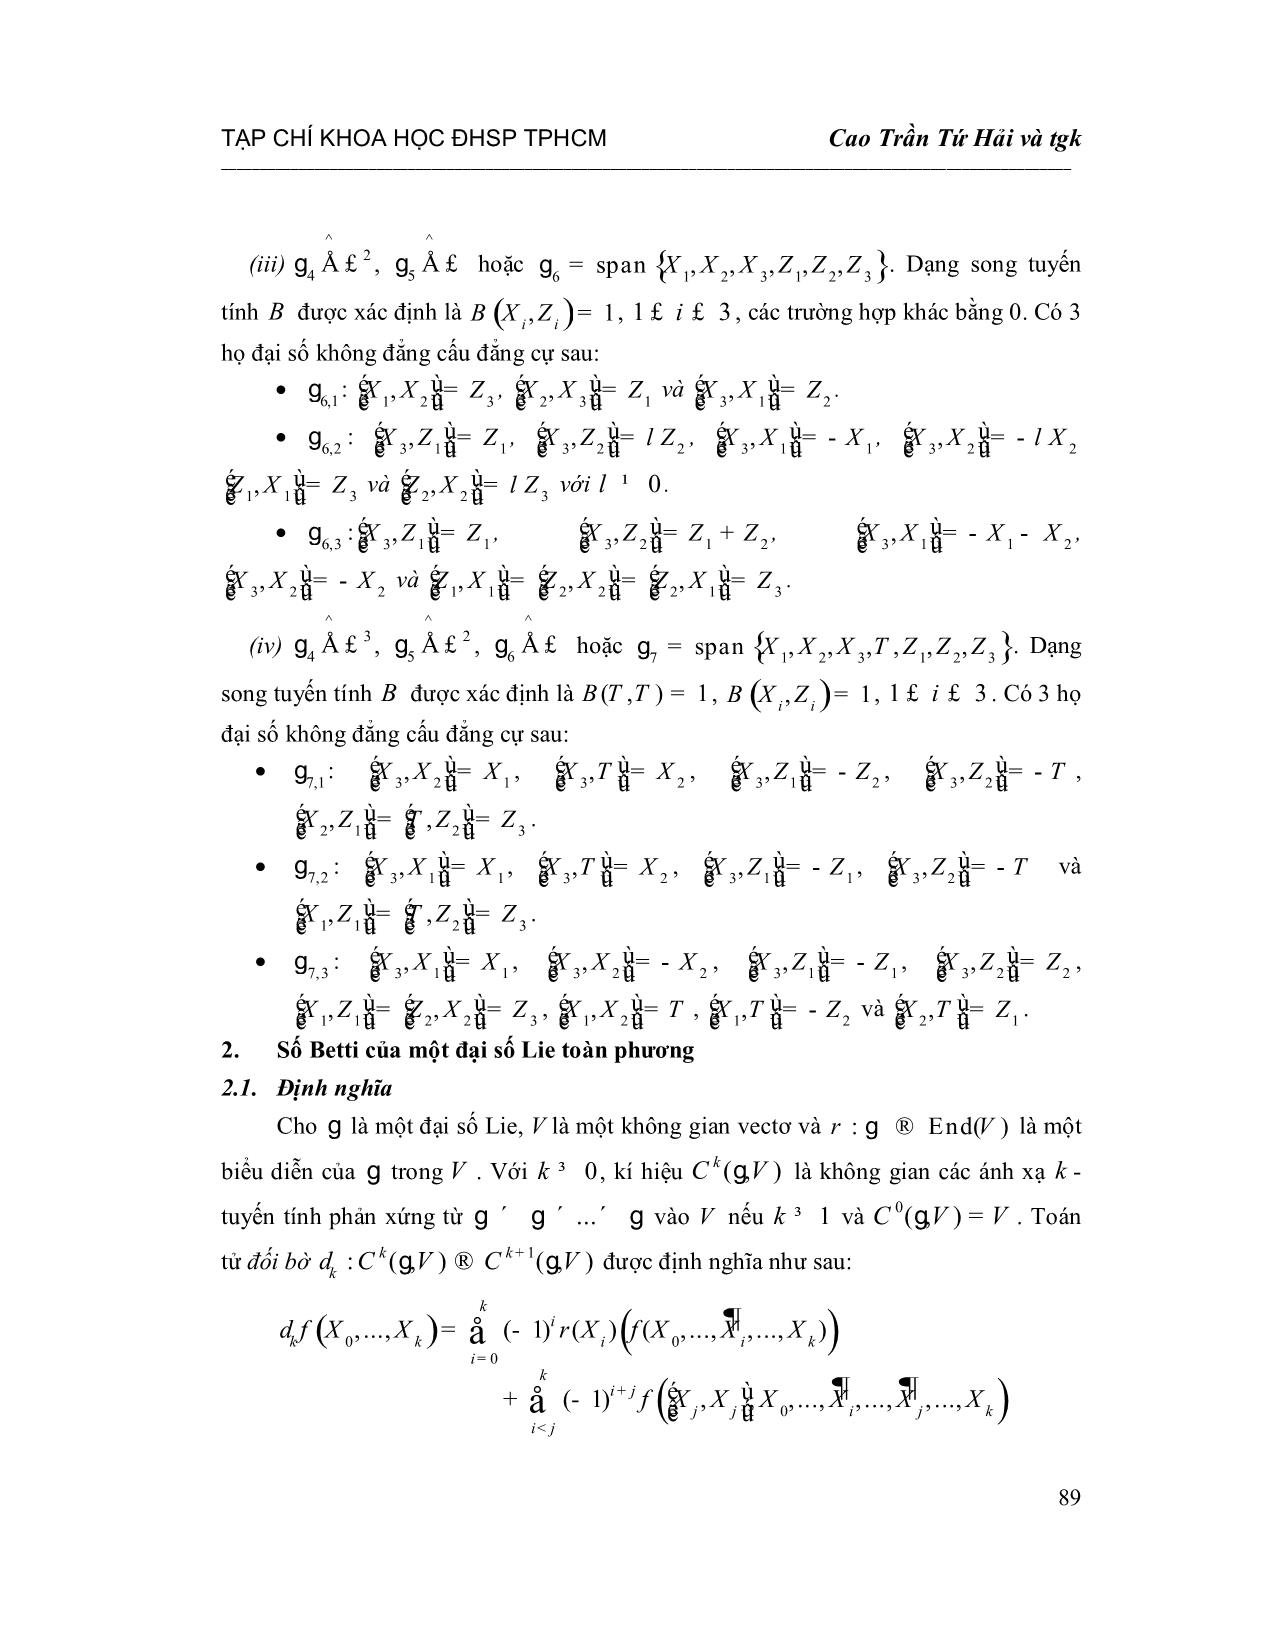 Số Betti và không gian các đạo hàm phản xứng của các đại số Lie toàn phương giải được có số chiều 7 trang 4